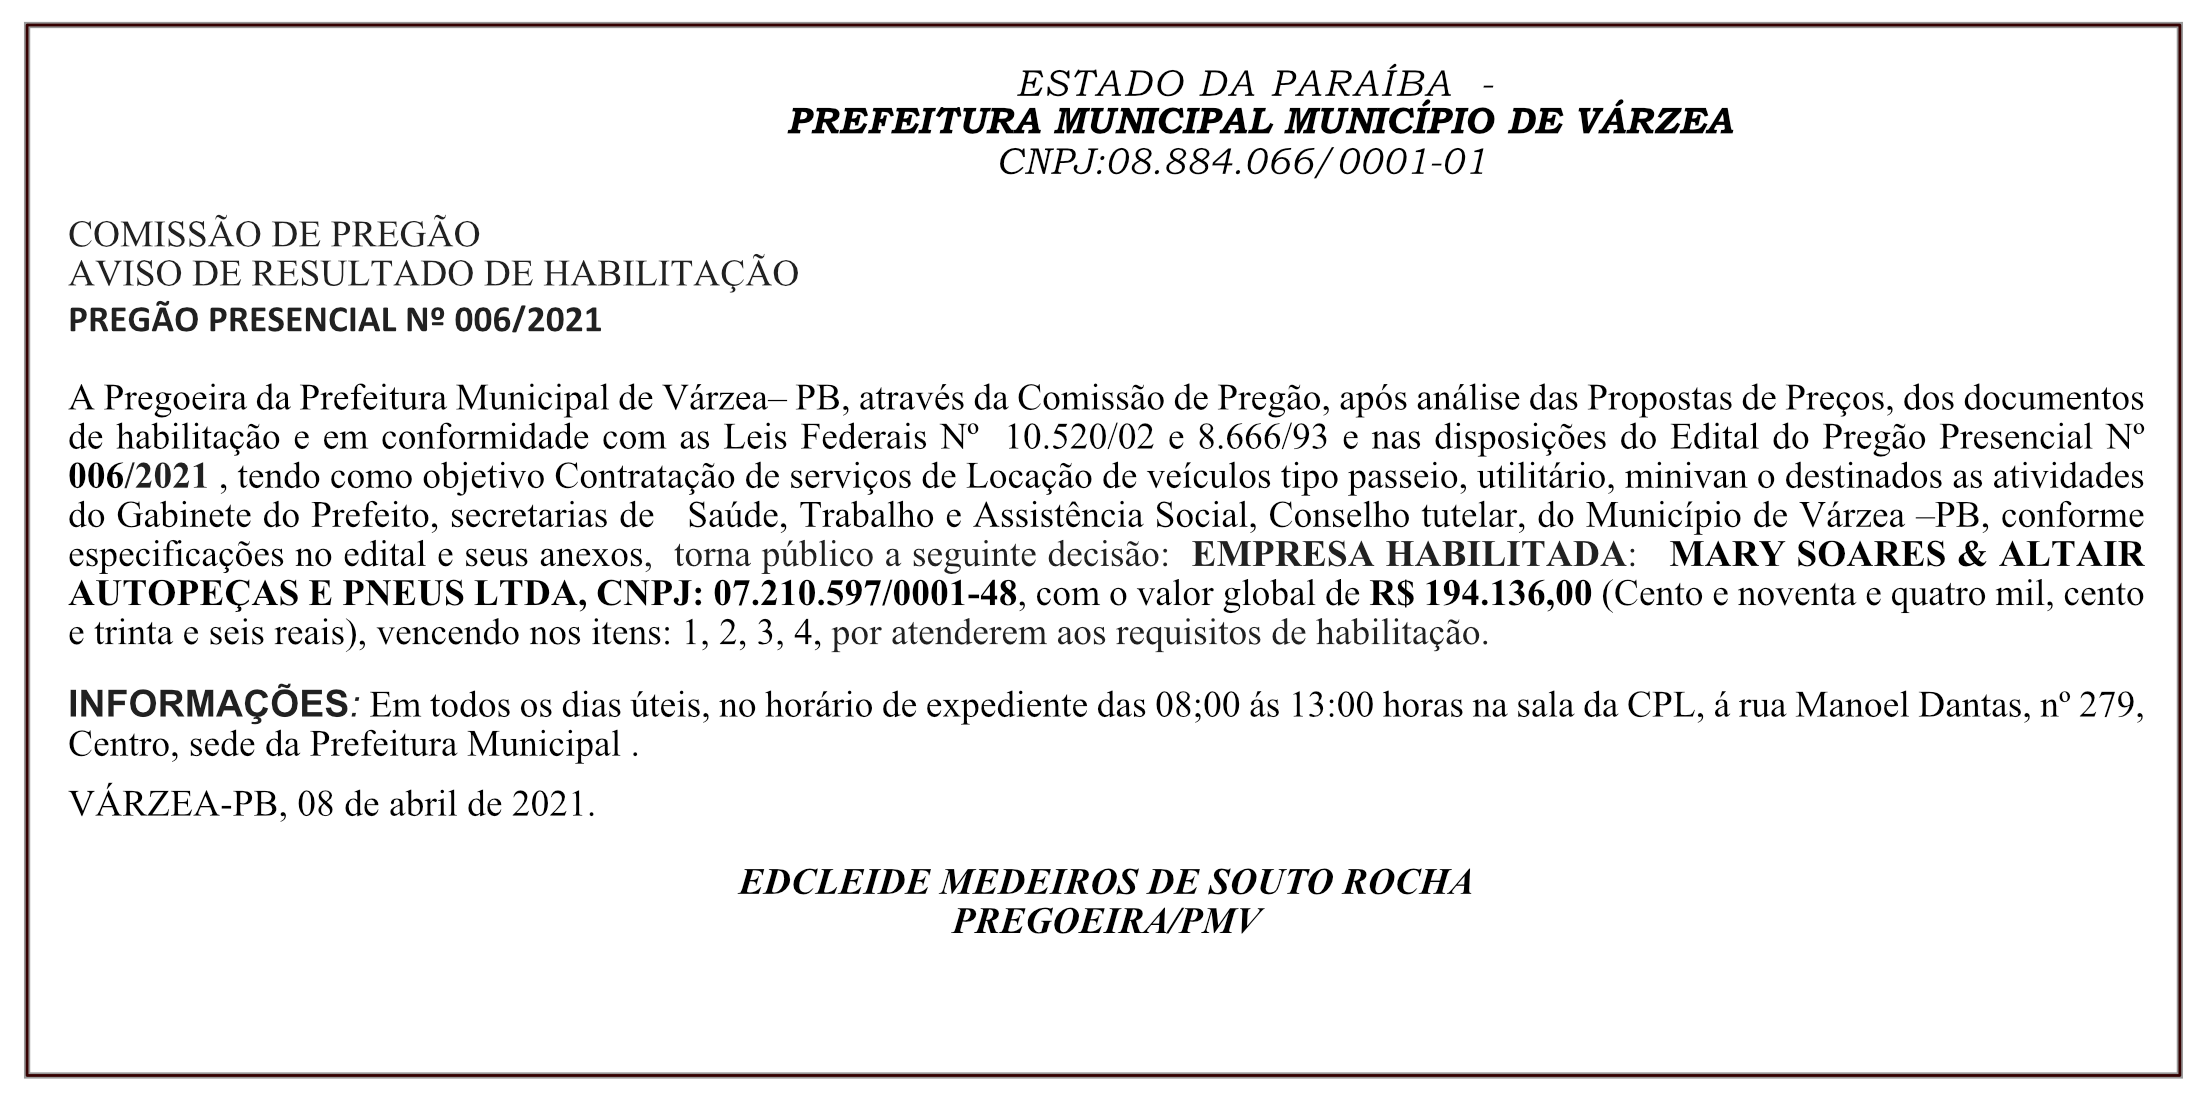 PREFEITURA MUNICIPAL DE VÁRZEA – COMISSÃO DE PREGÃO – AVISO DE RESULTADO DE HABILITAÇÃO – PREGÃO PRESENCIAL Nº 006/2021